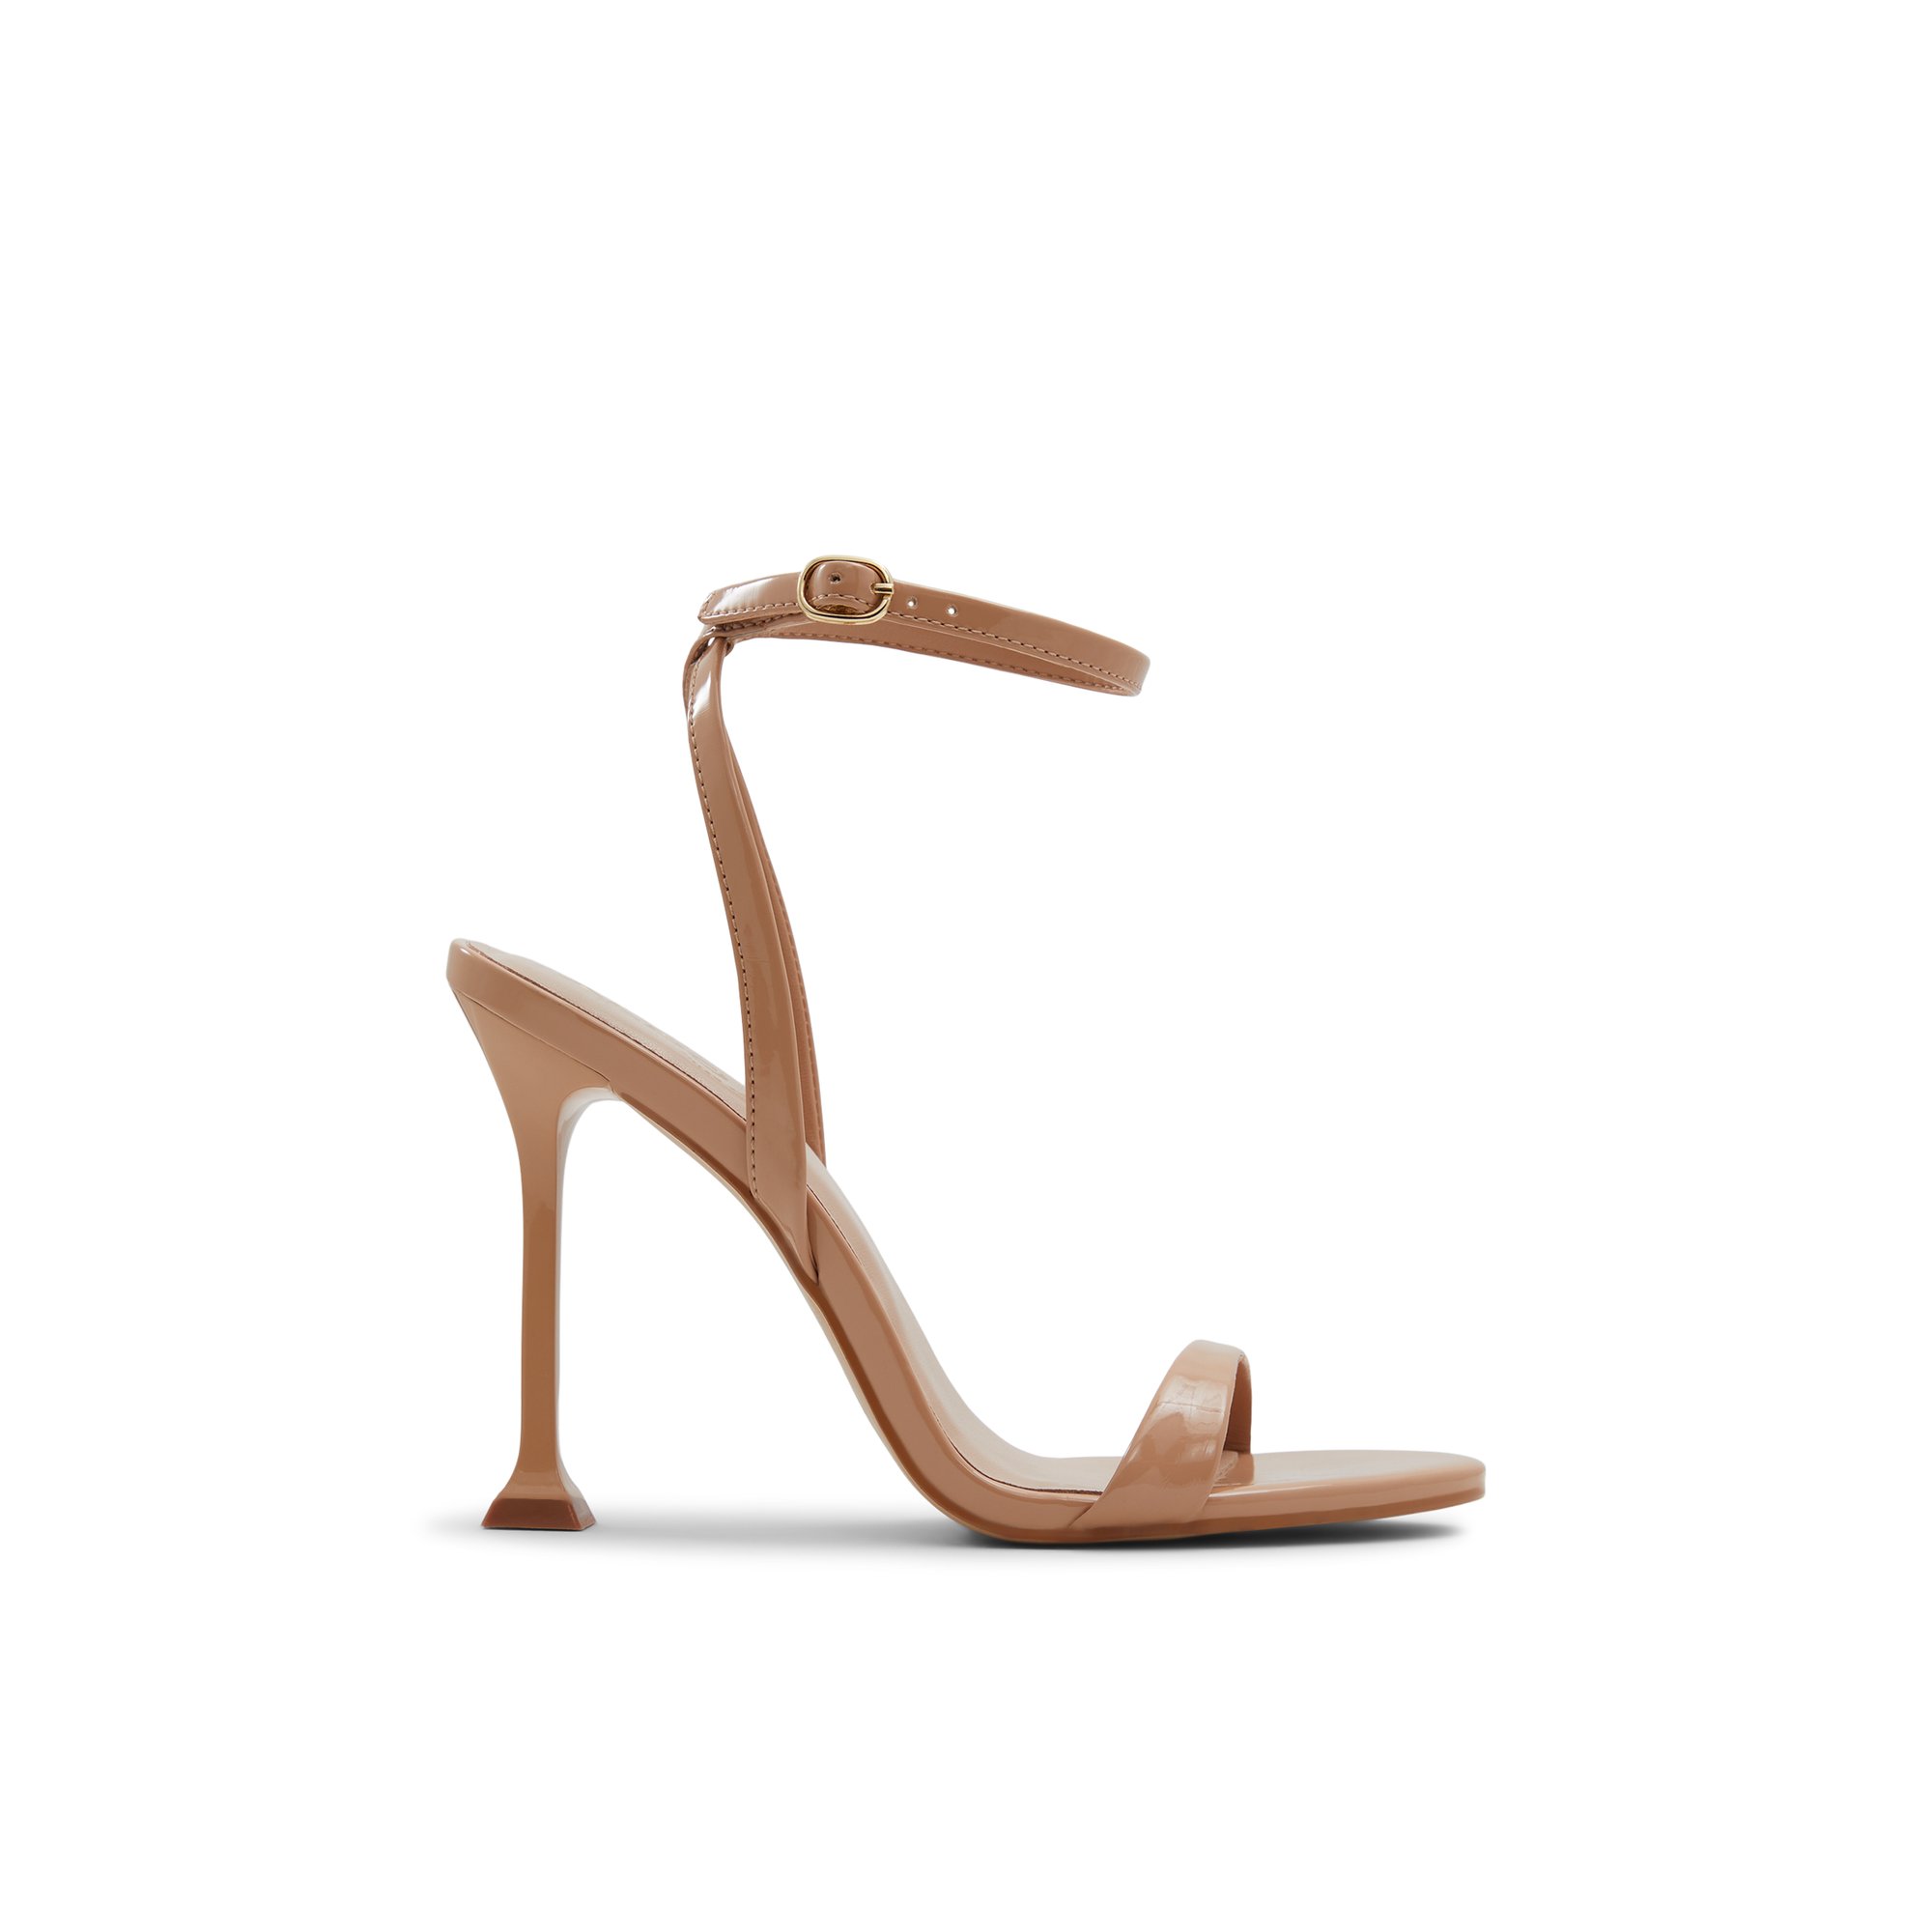 ALDO Lydala - Women's Strappy Sandal Sandals - Beige